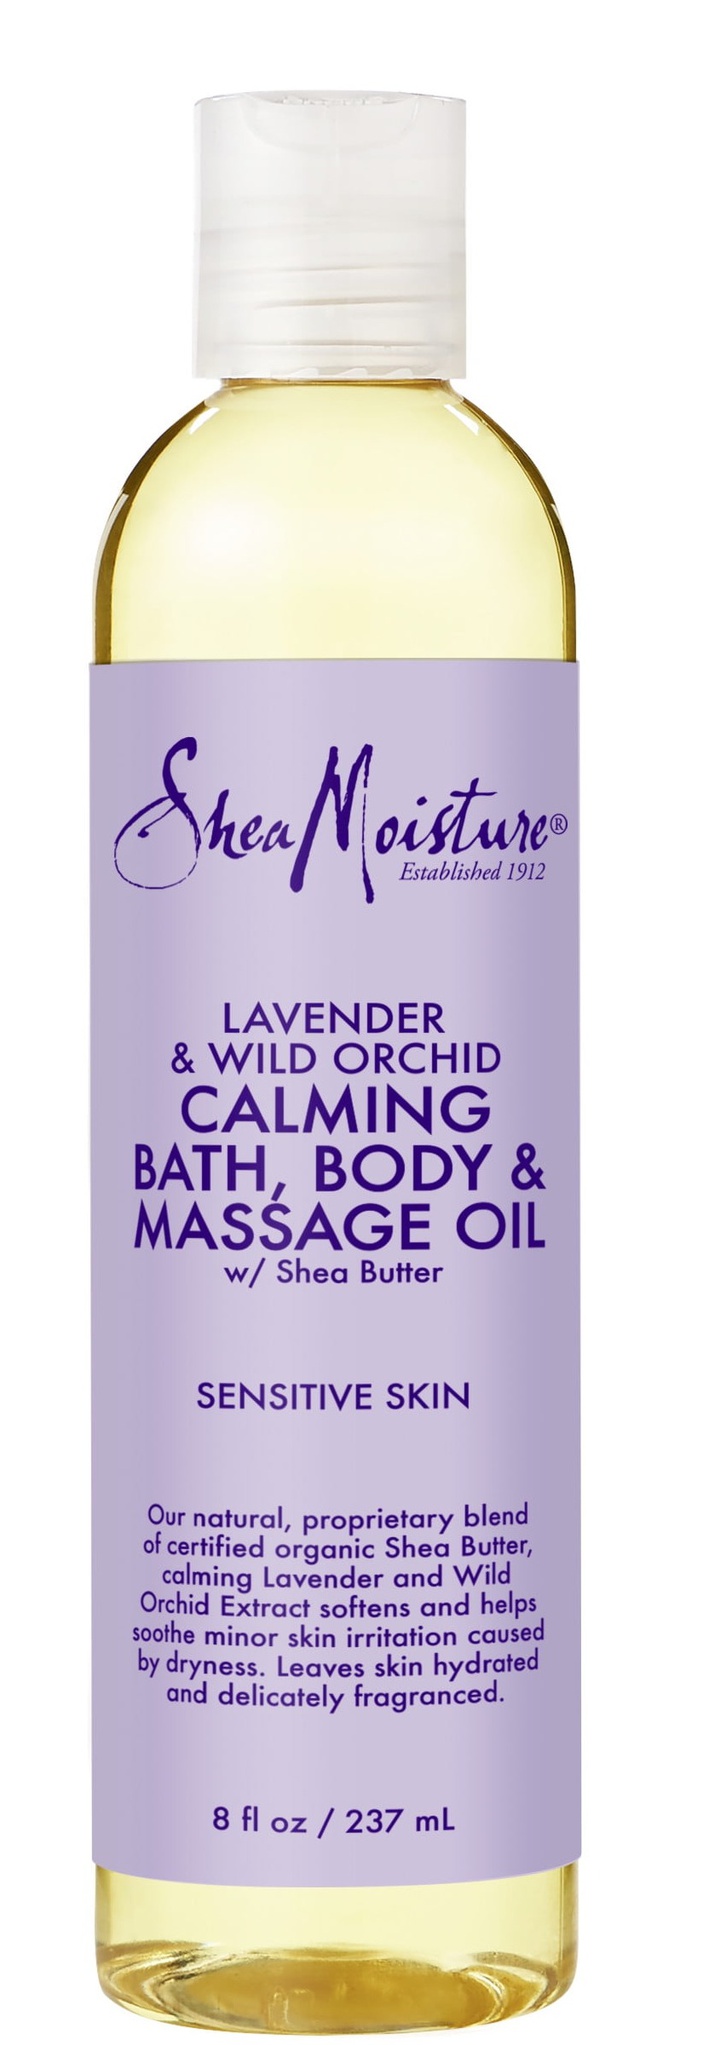 Shea Moisture Lavender & Wild Orchid Bath, Body & Massage Oil